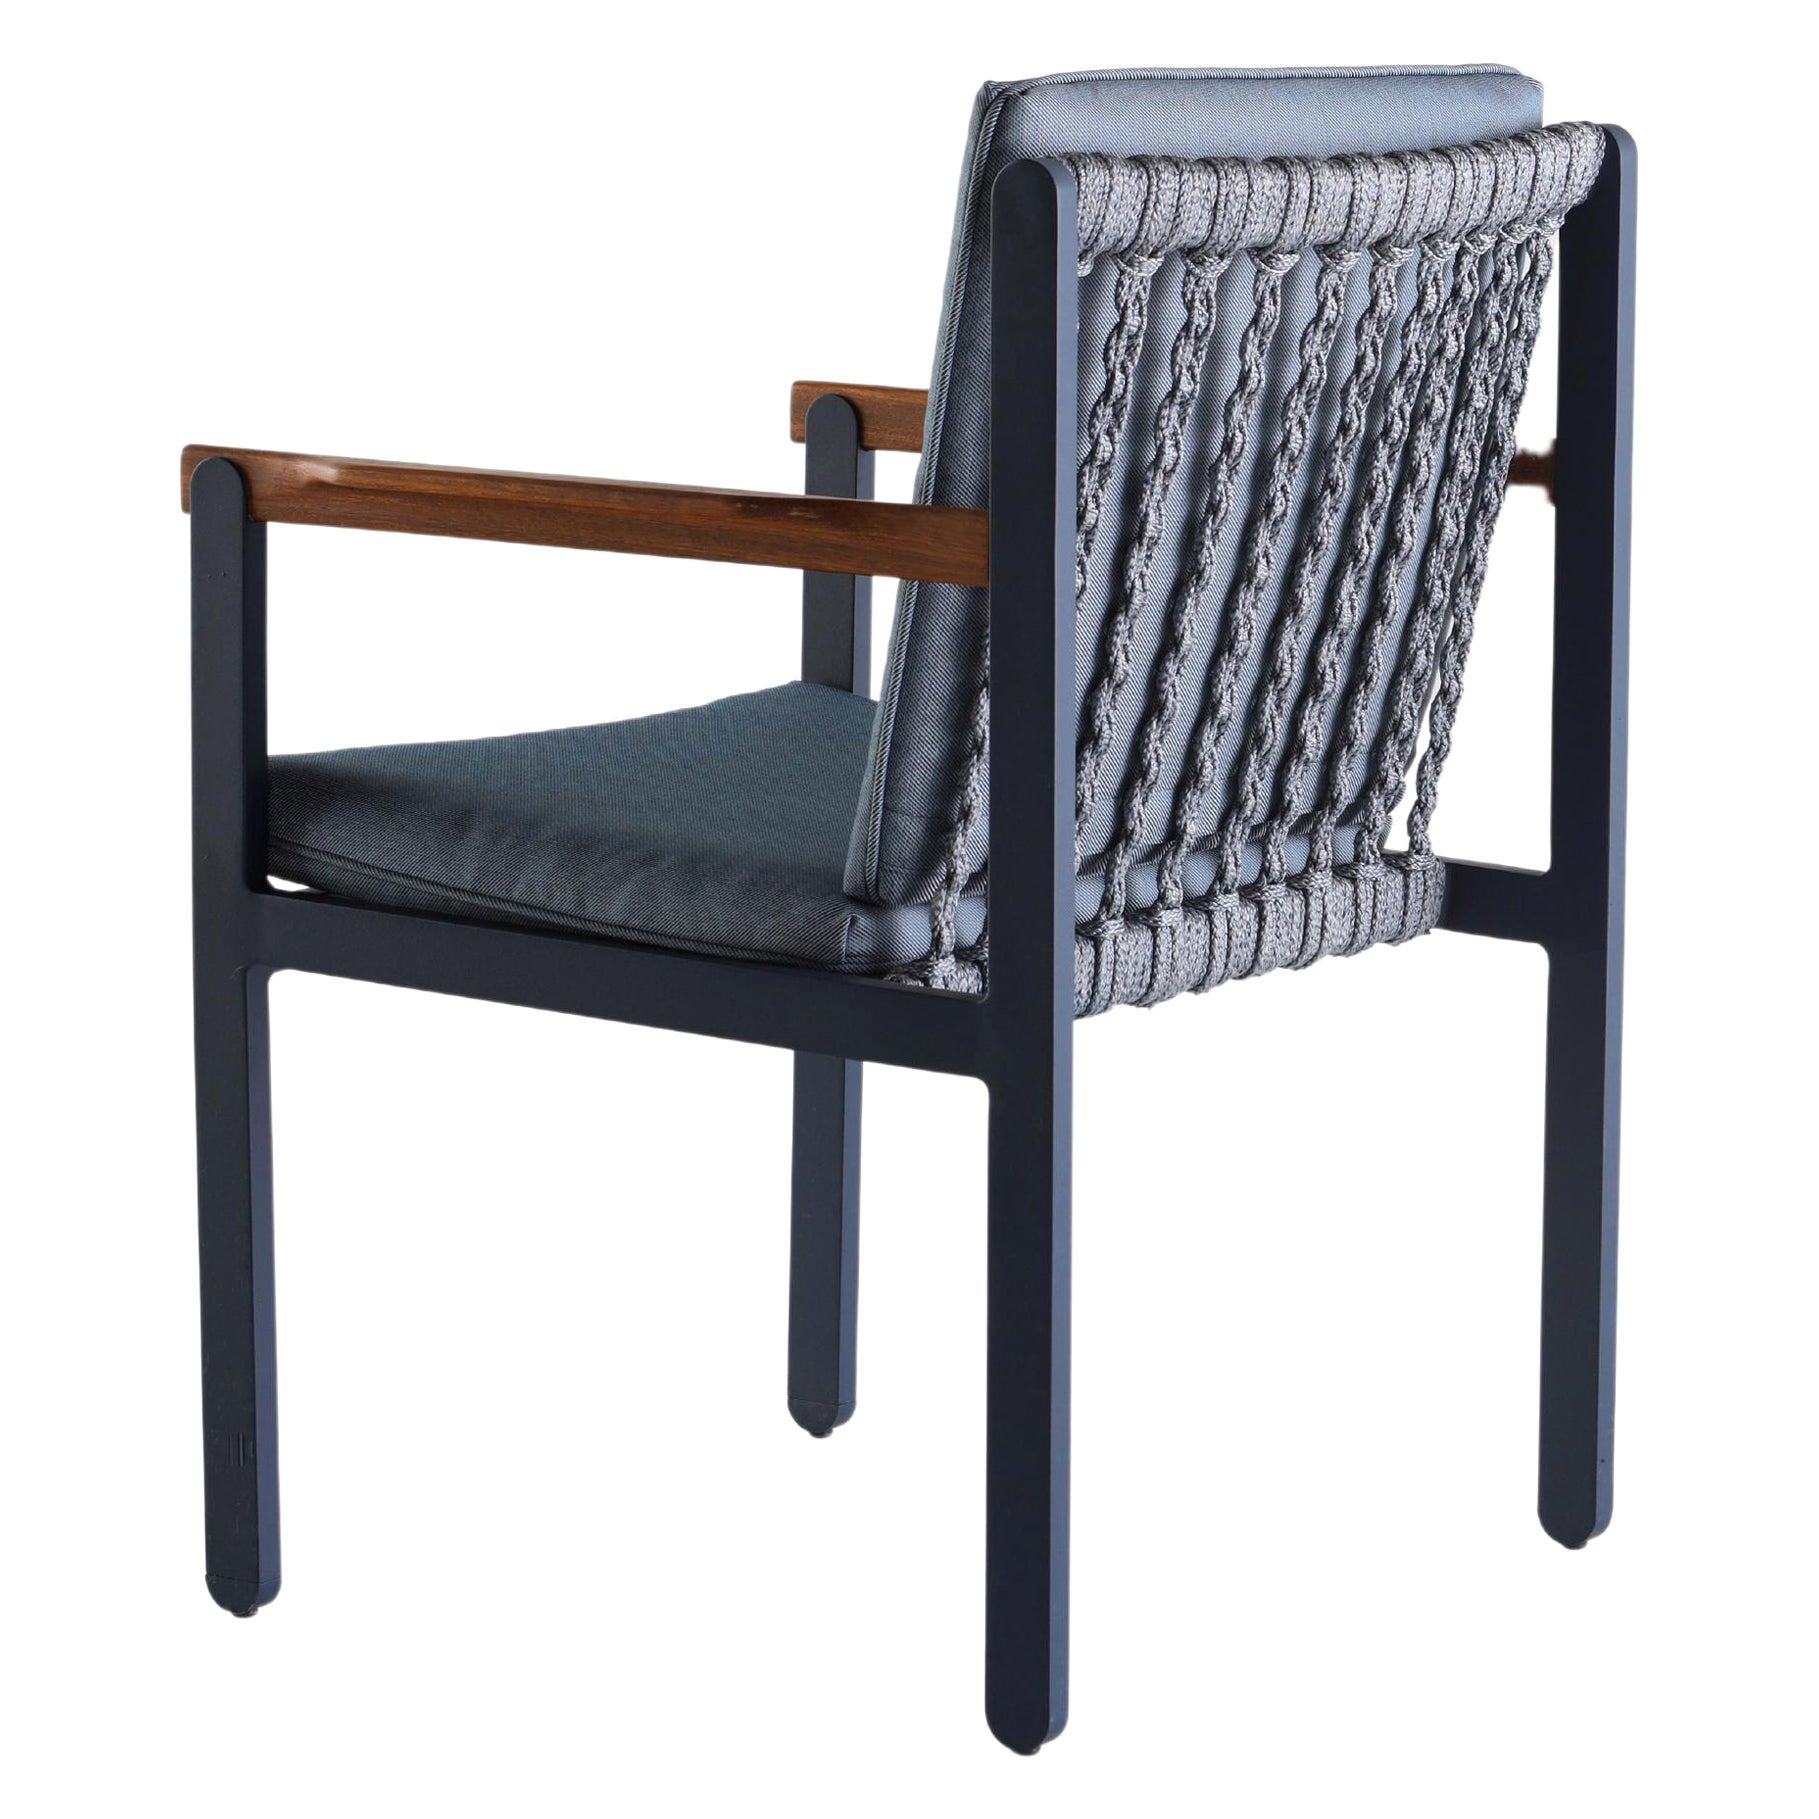 Chaise en métal, corde nautique et textiles pour l'extérieur ou l'intérieur en vente